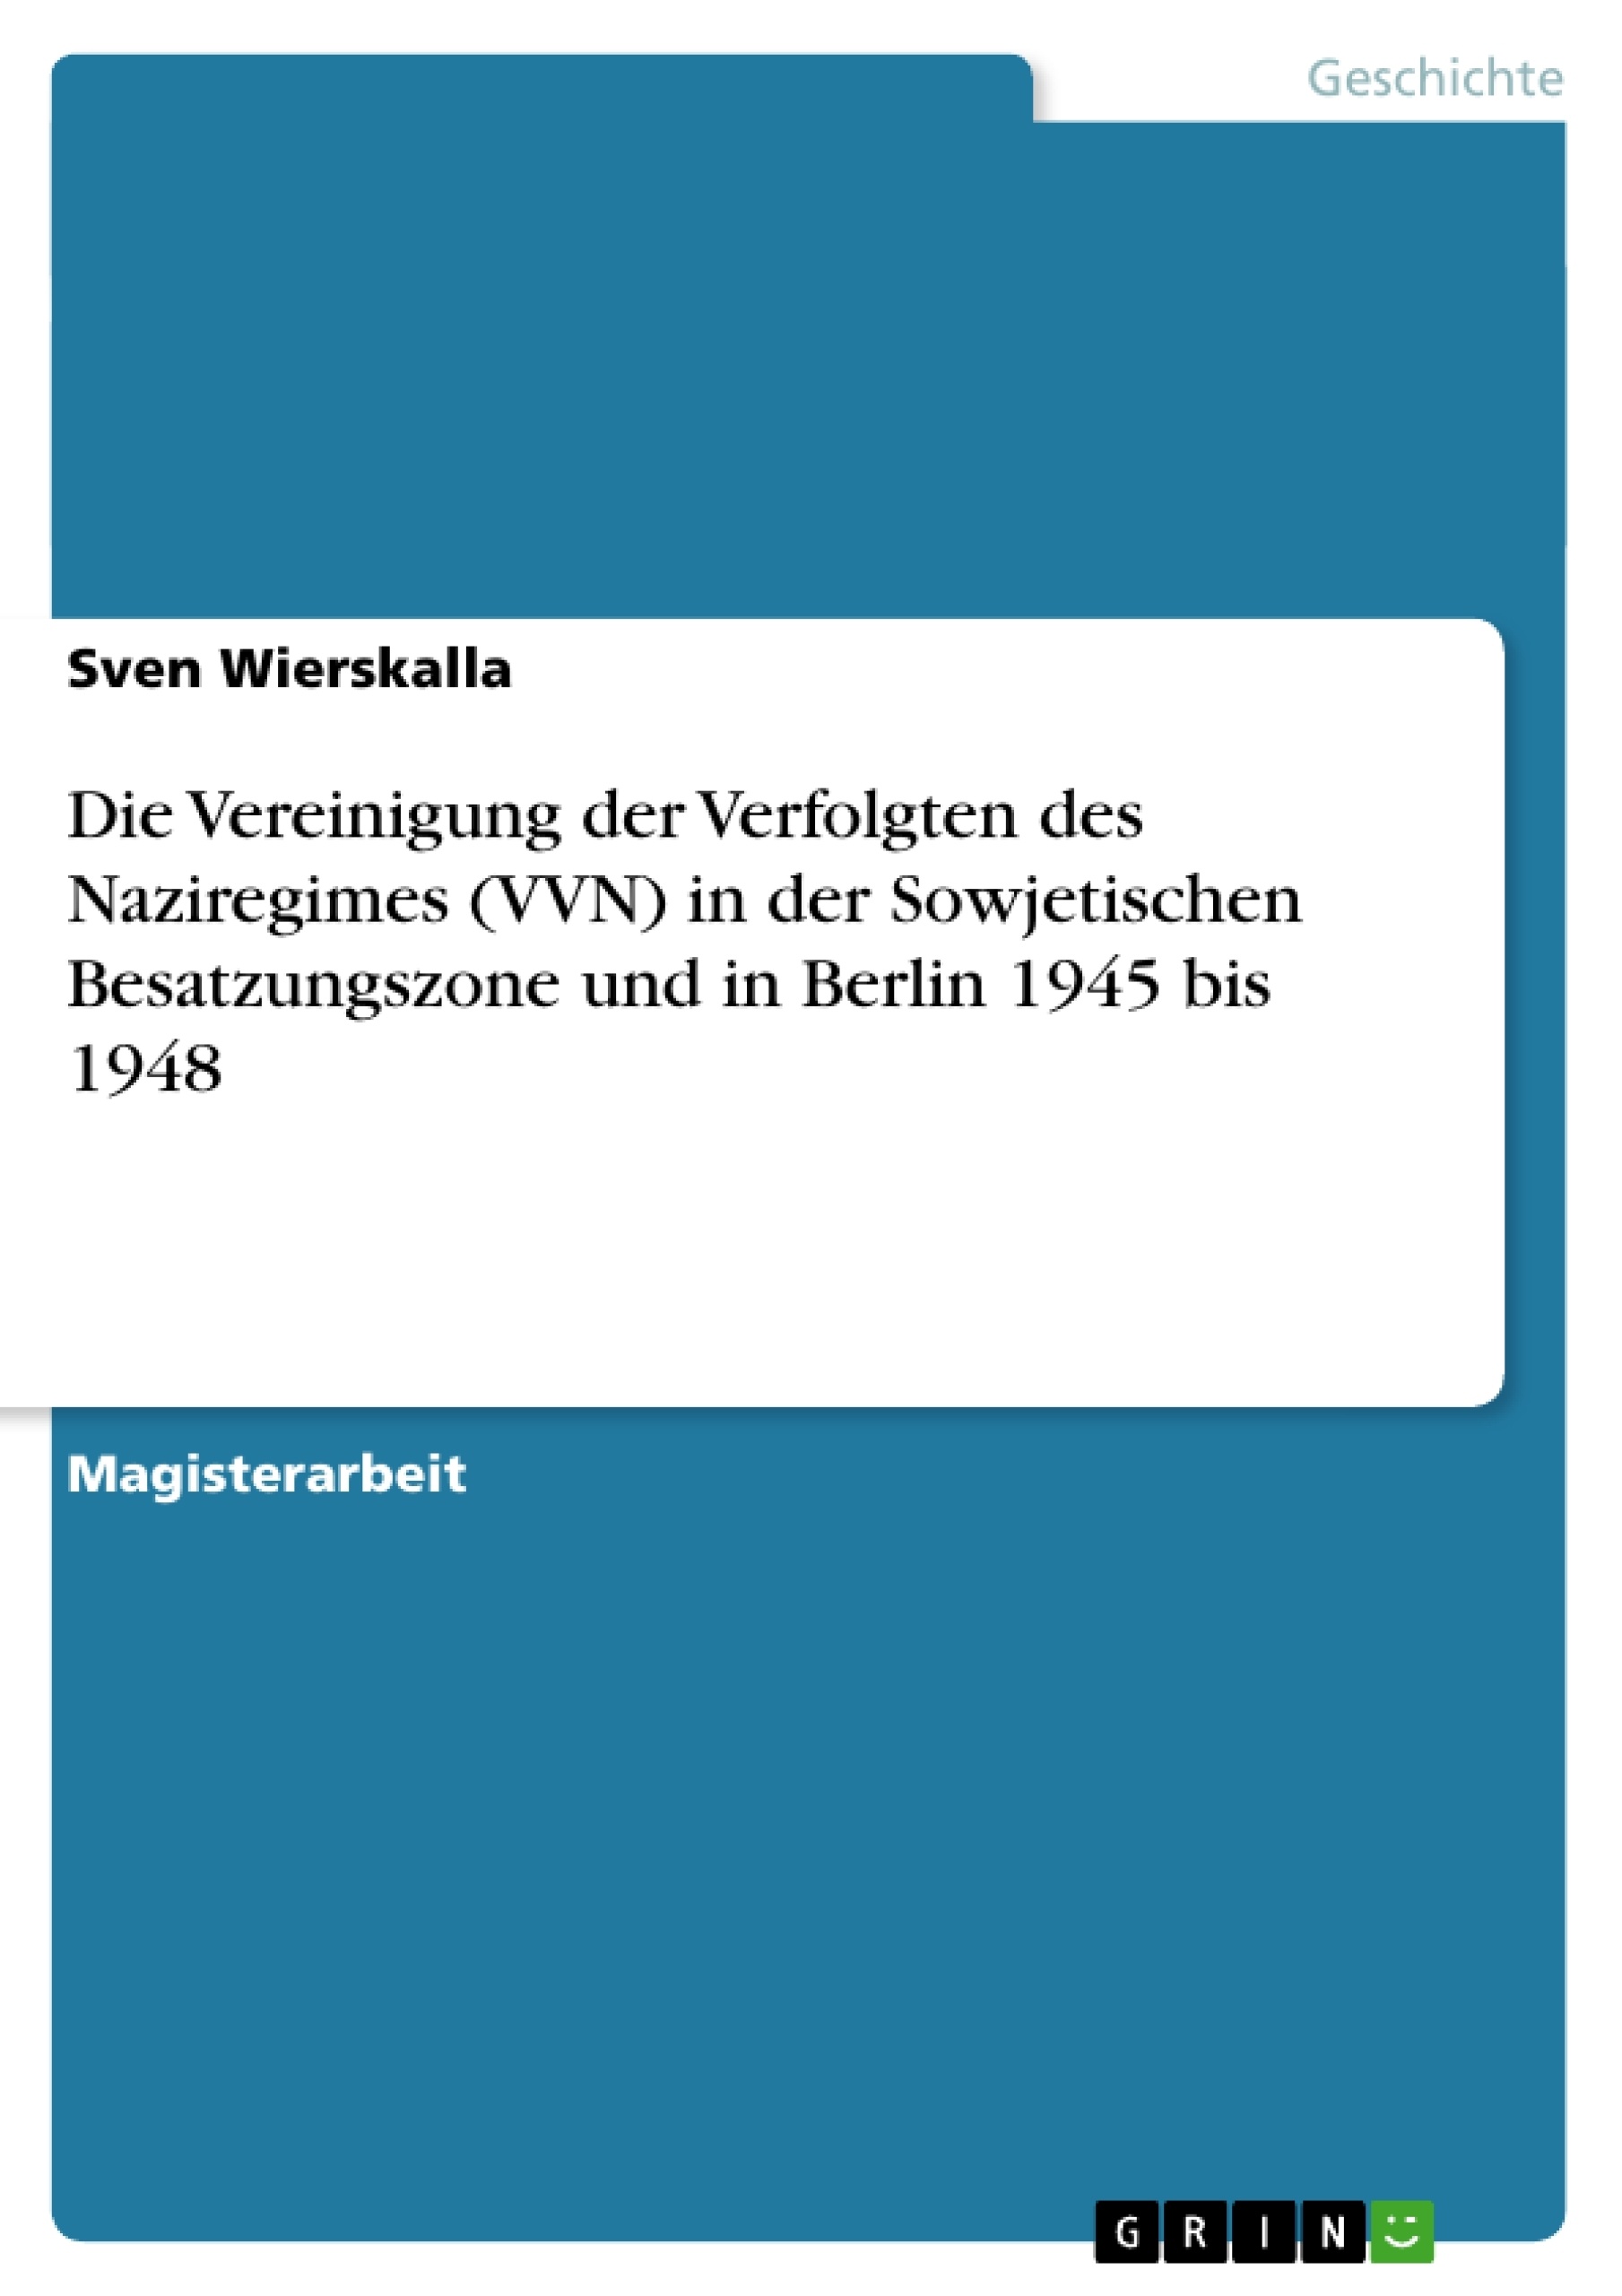 Titel: Die Vereinigung der Verfolgten des Naziregimes (VVN) in der Sowjetischen Besatzungszone und in Berlin 1945 bis 1948